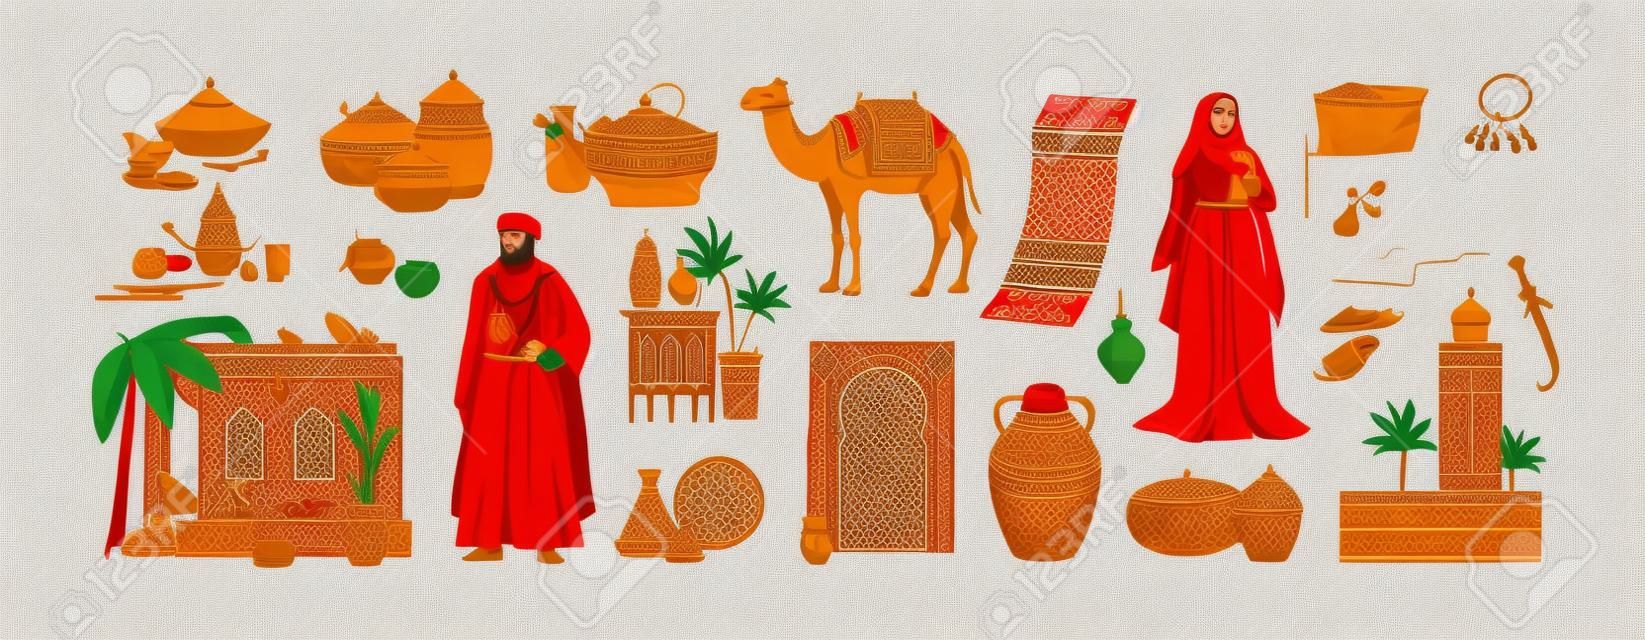 Cultura marroquina tradicional conjunto herança marroquina comida árabe cerâmica arquitetura roupas acessórios camelo tapete oriental condimentos ilustrações vetoriais planas isoladas em fundo branco